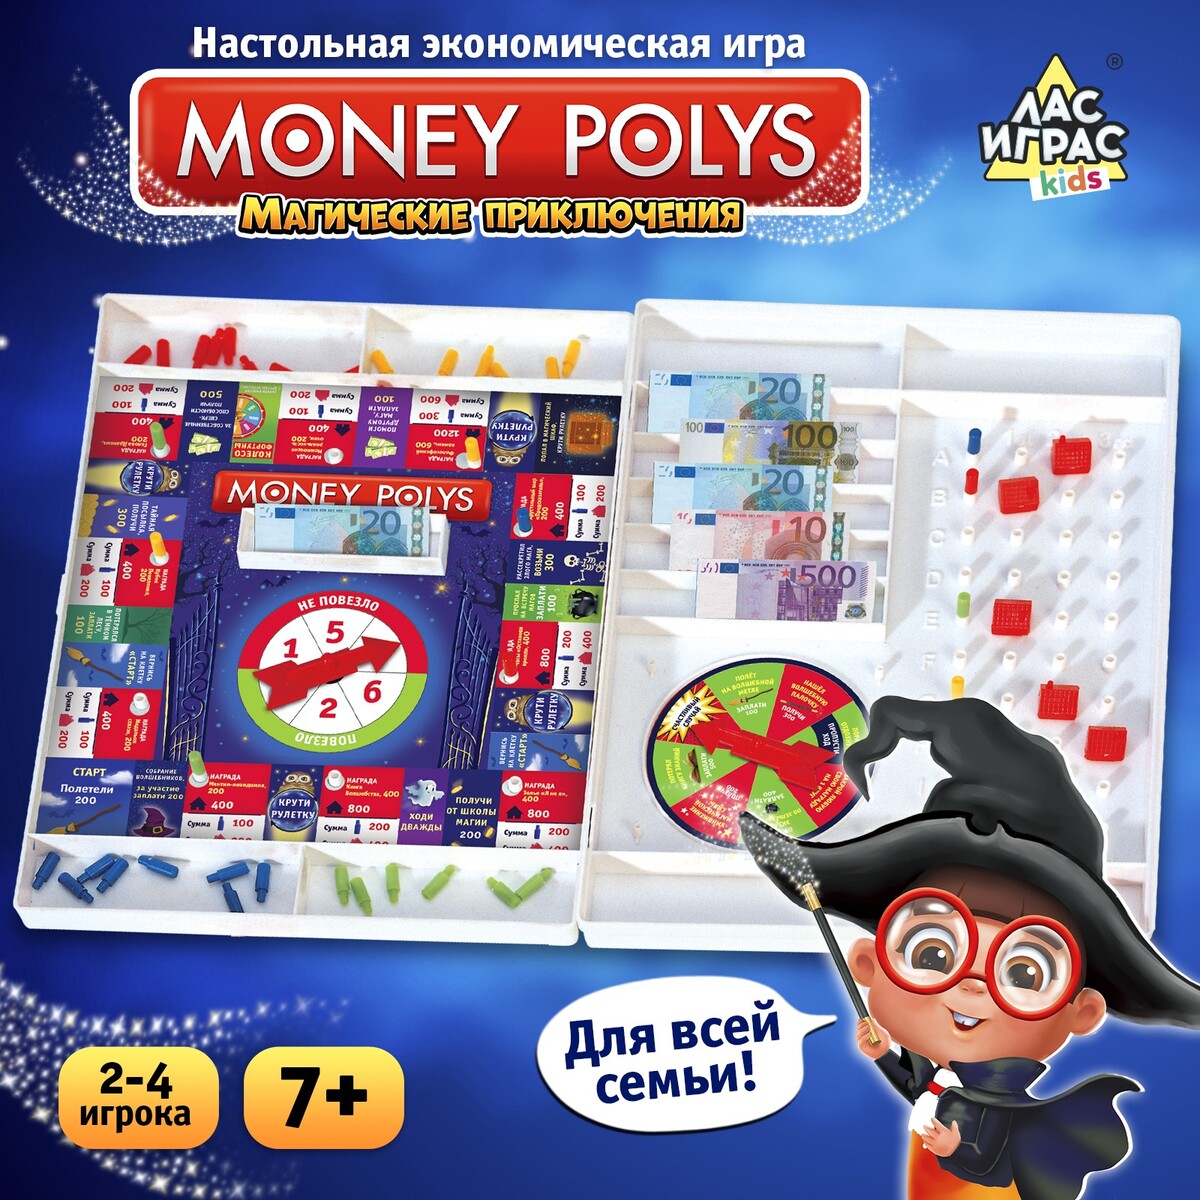 Настольная экономическая игра монополия экономическая игра лас играс money polys зоопарк 4 5361464